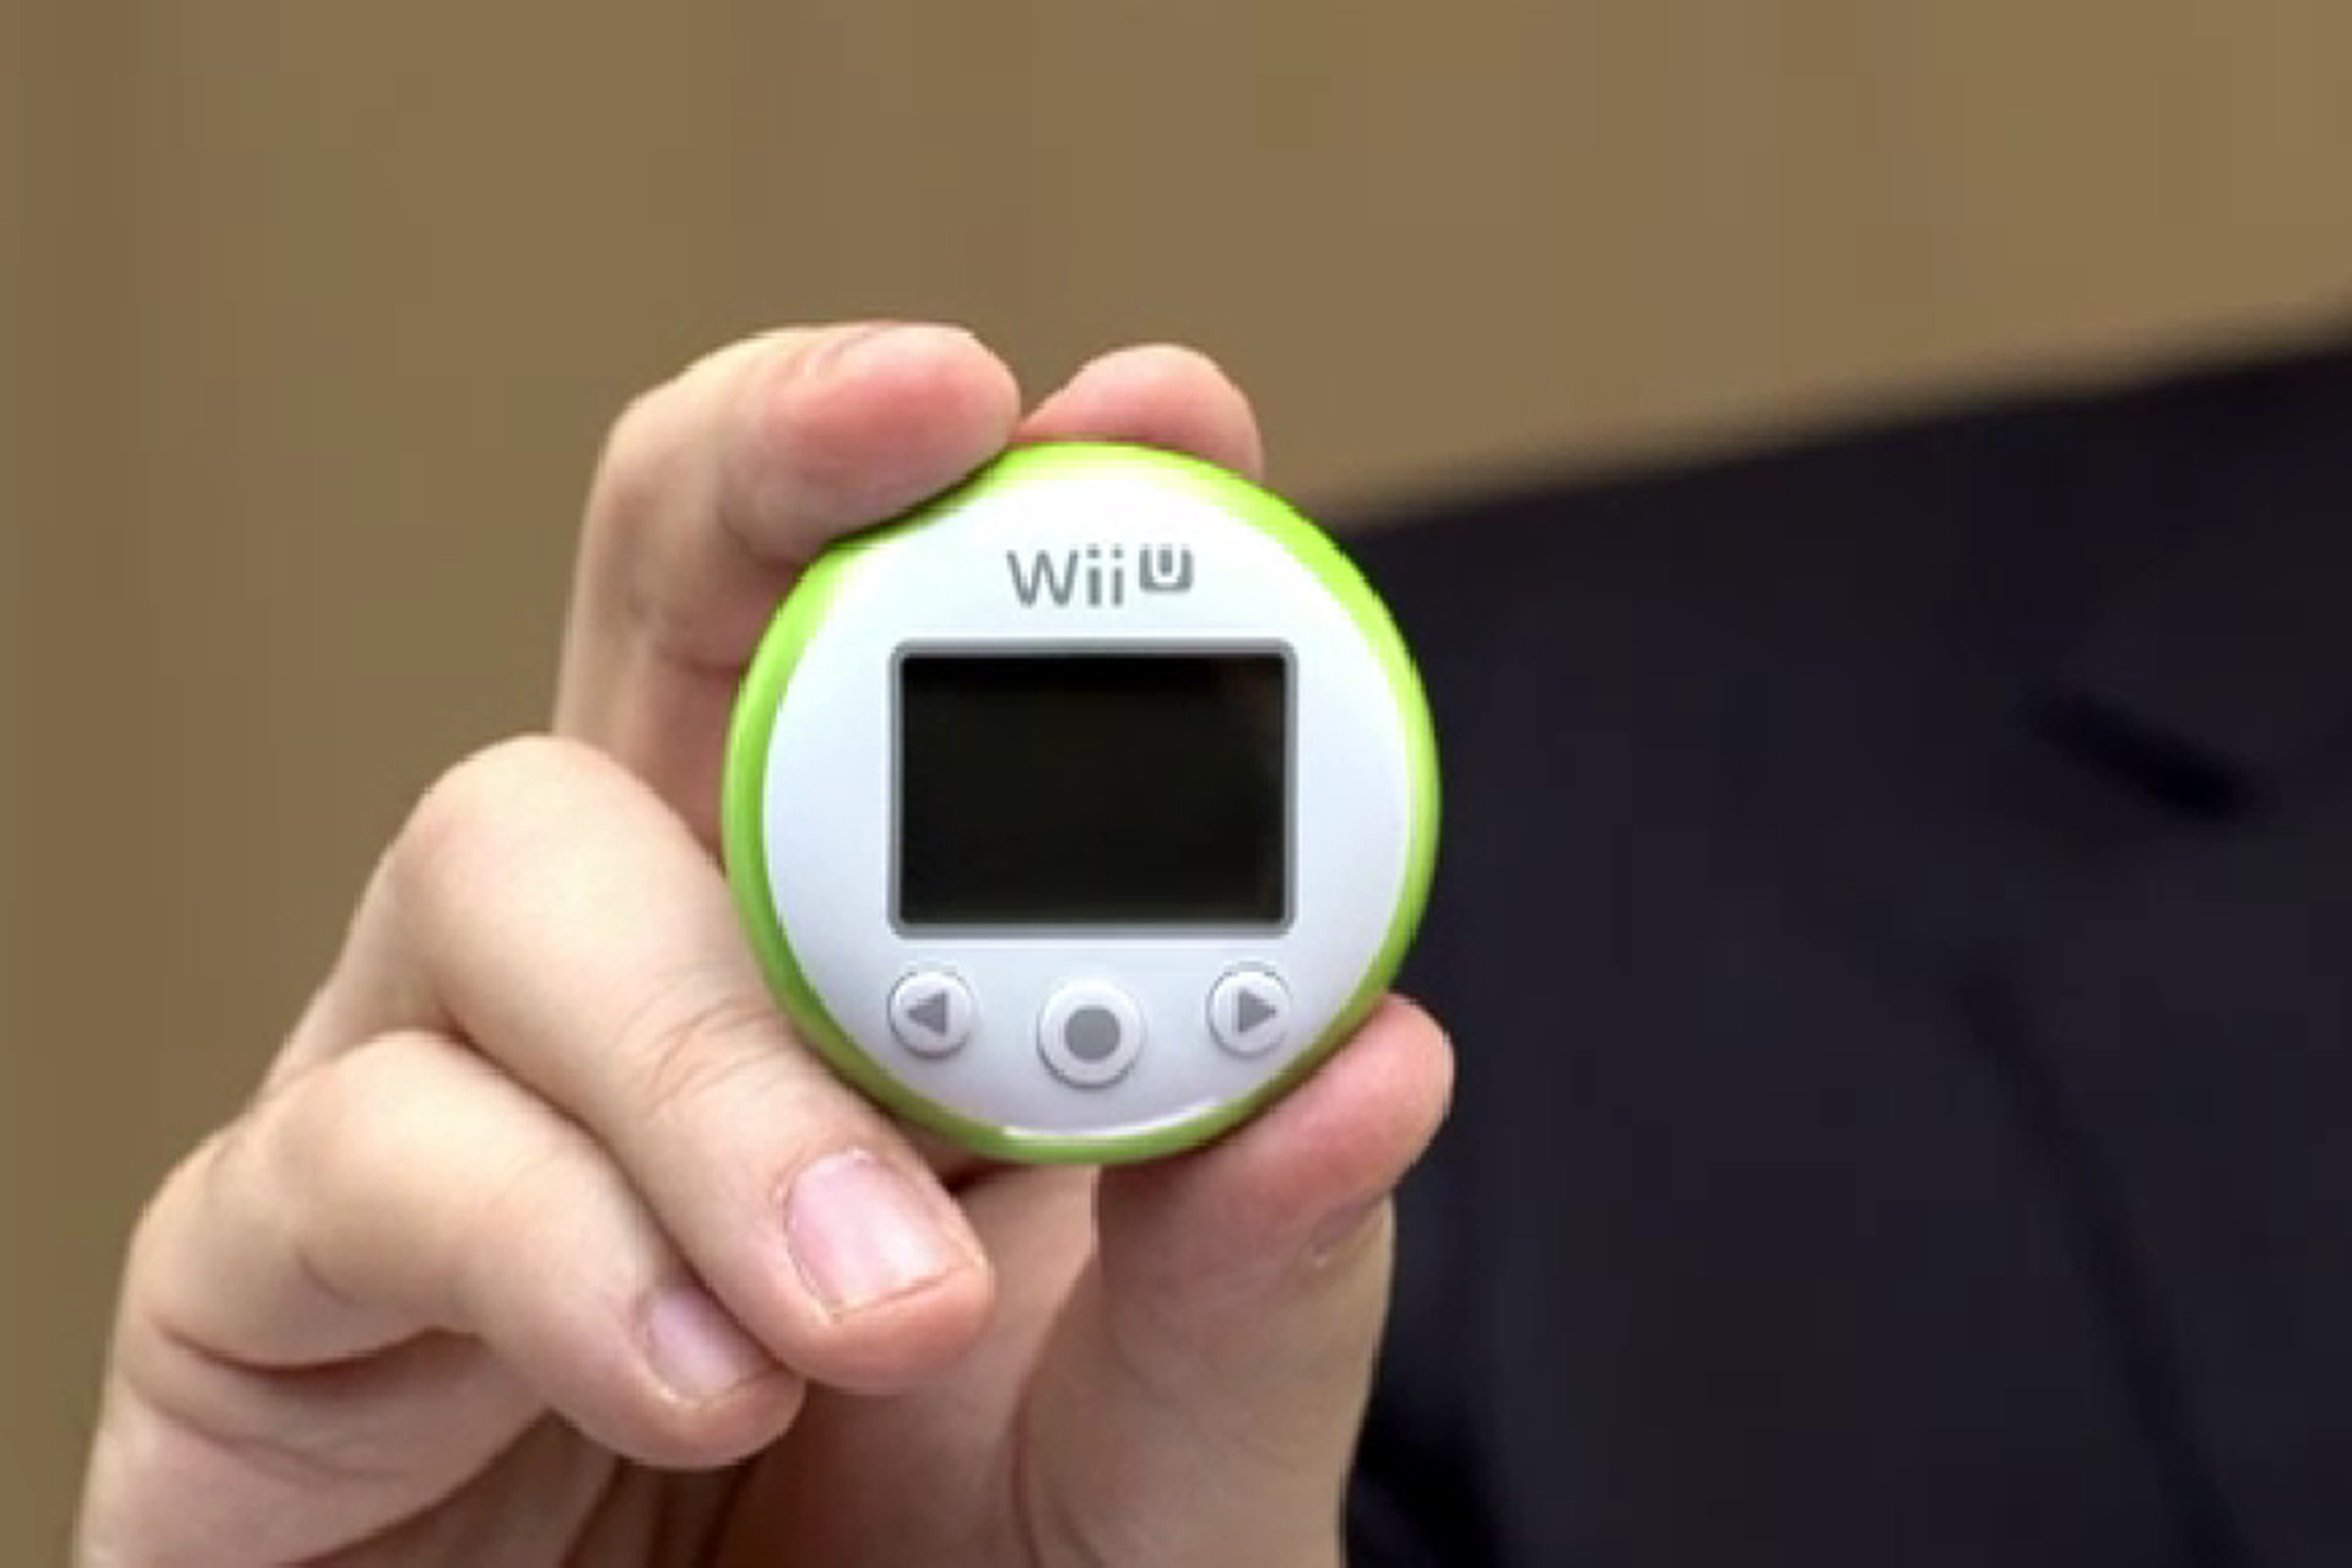 Wii U pedometer